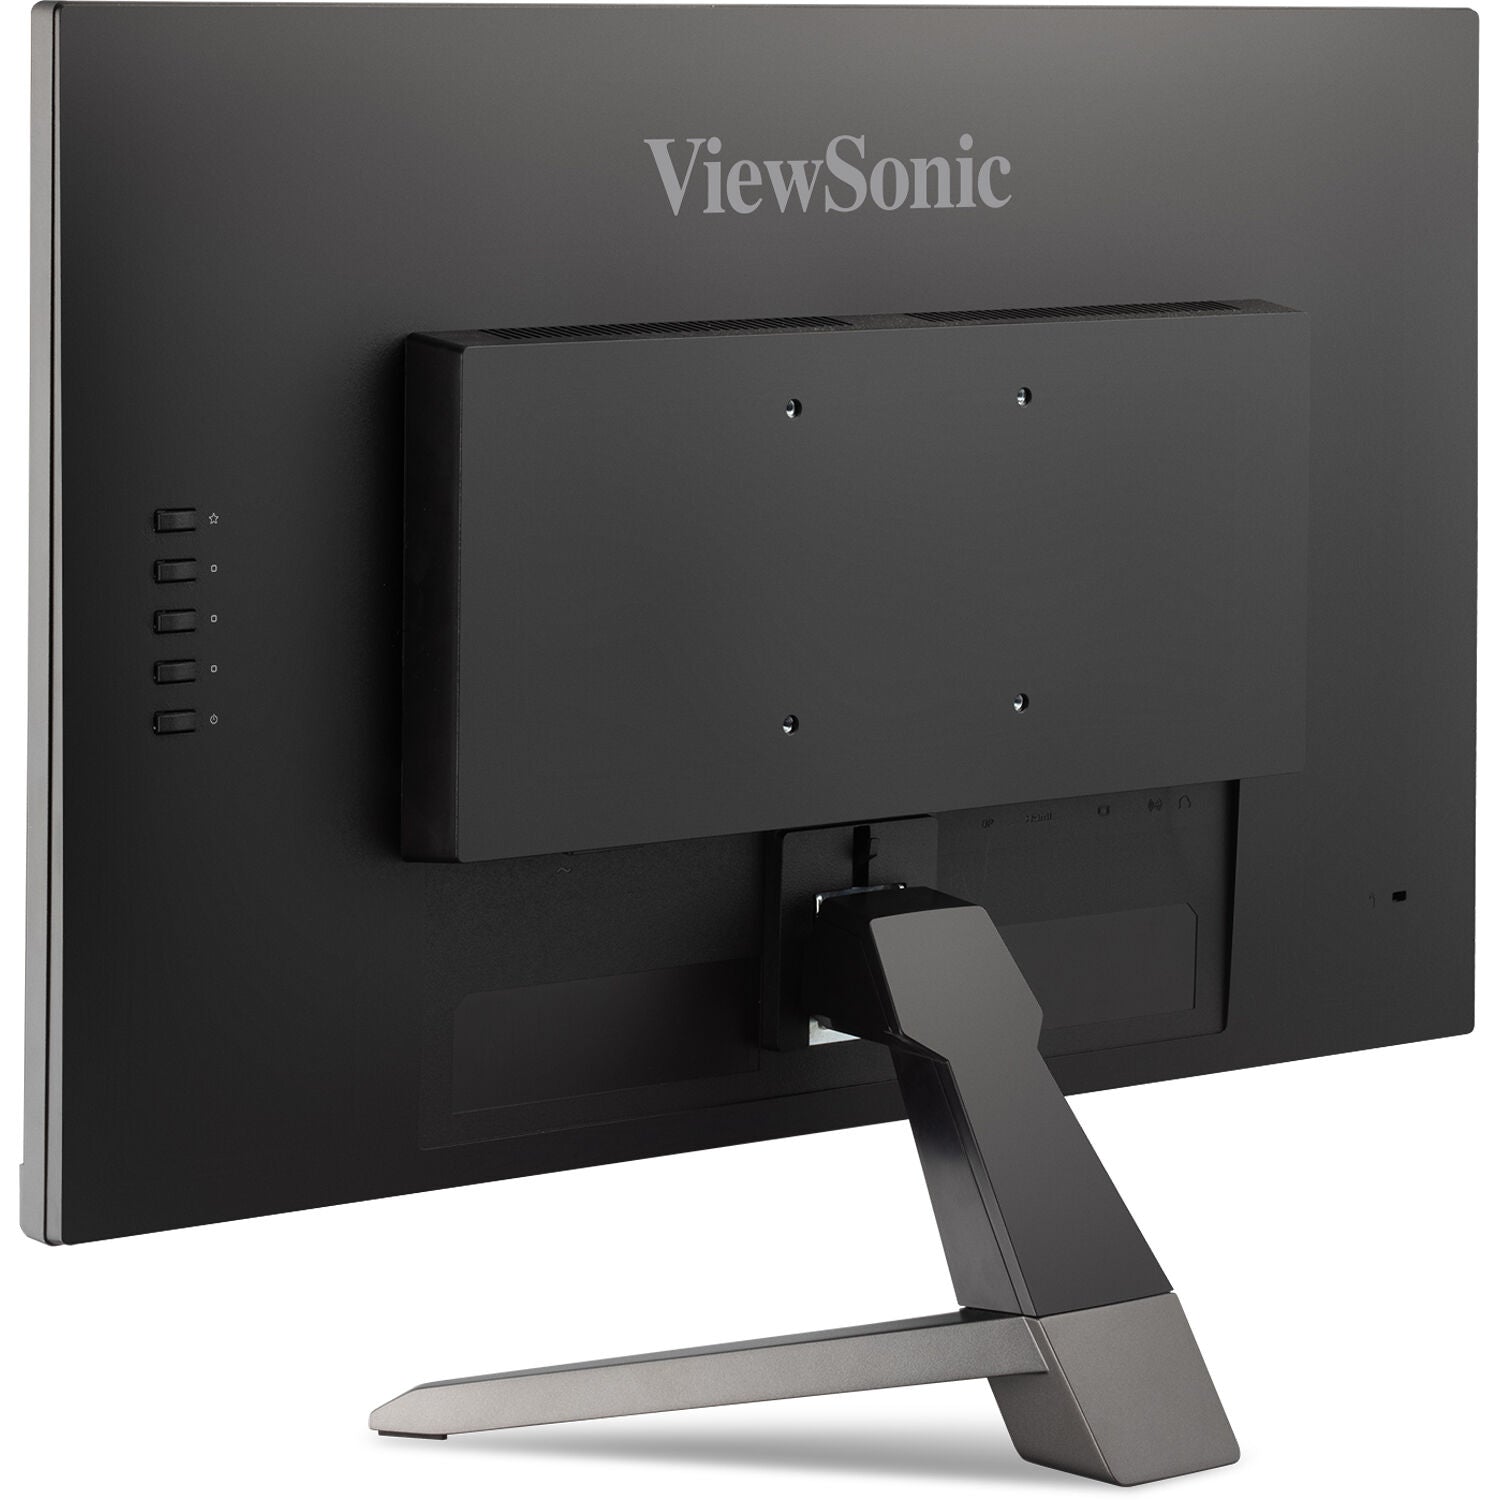 ViewSonic VX2467-MHD-S 24" 16:9 FreeSync 1080p Gaming VA Monitor - Certified Refurbished